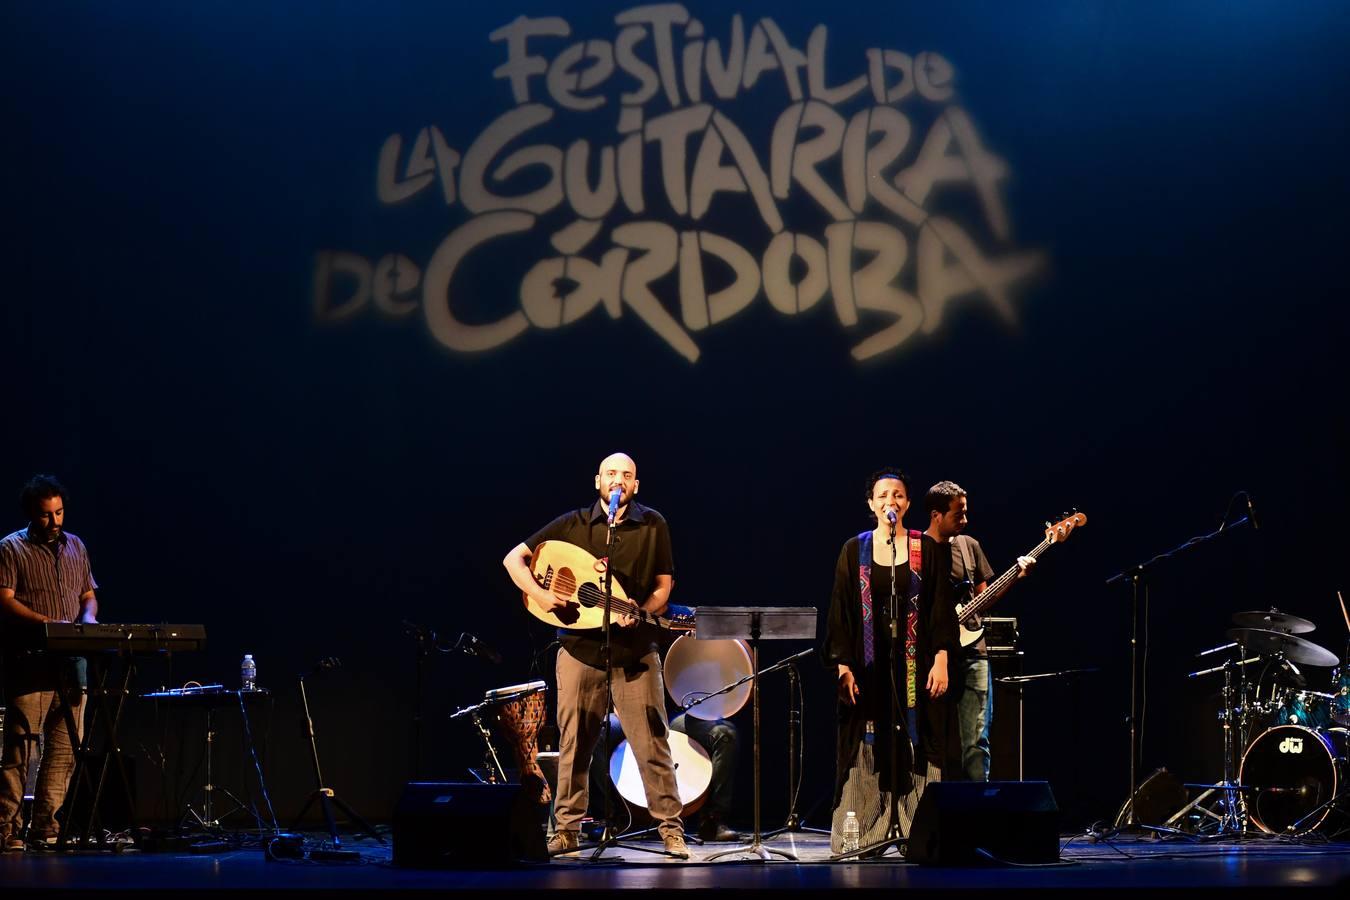 Festival de la Guitarra de Córdoba | Miguel Poveda y Lekhfa